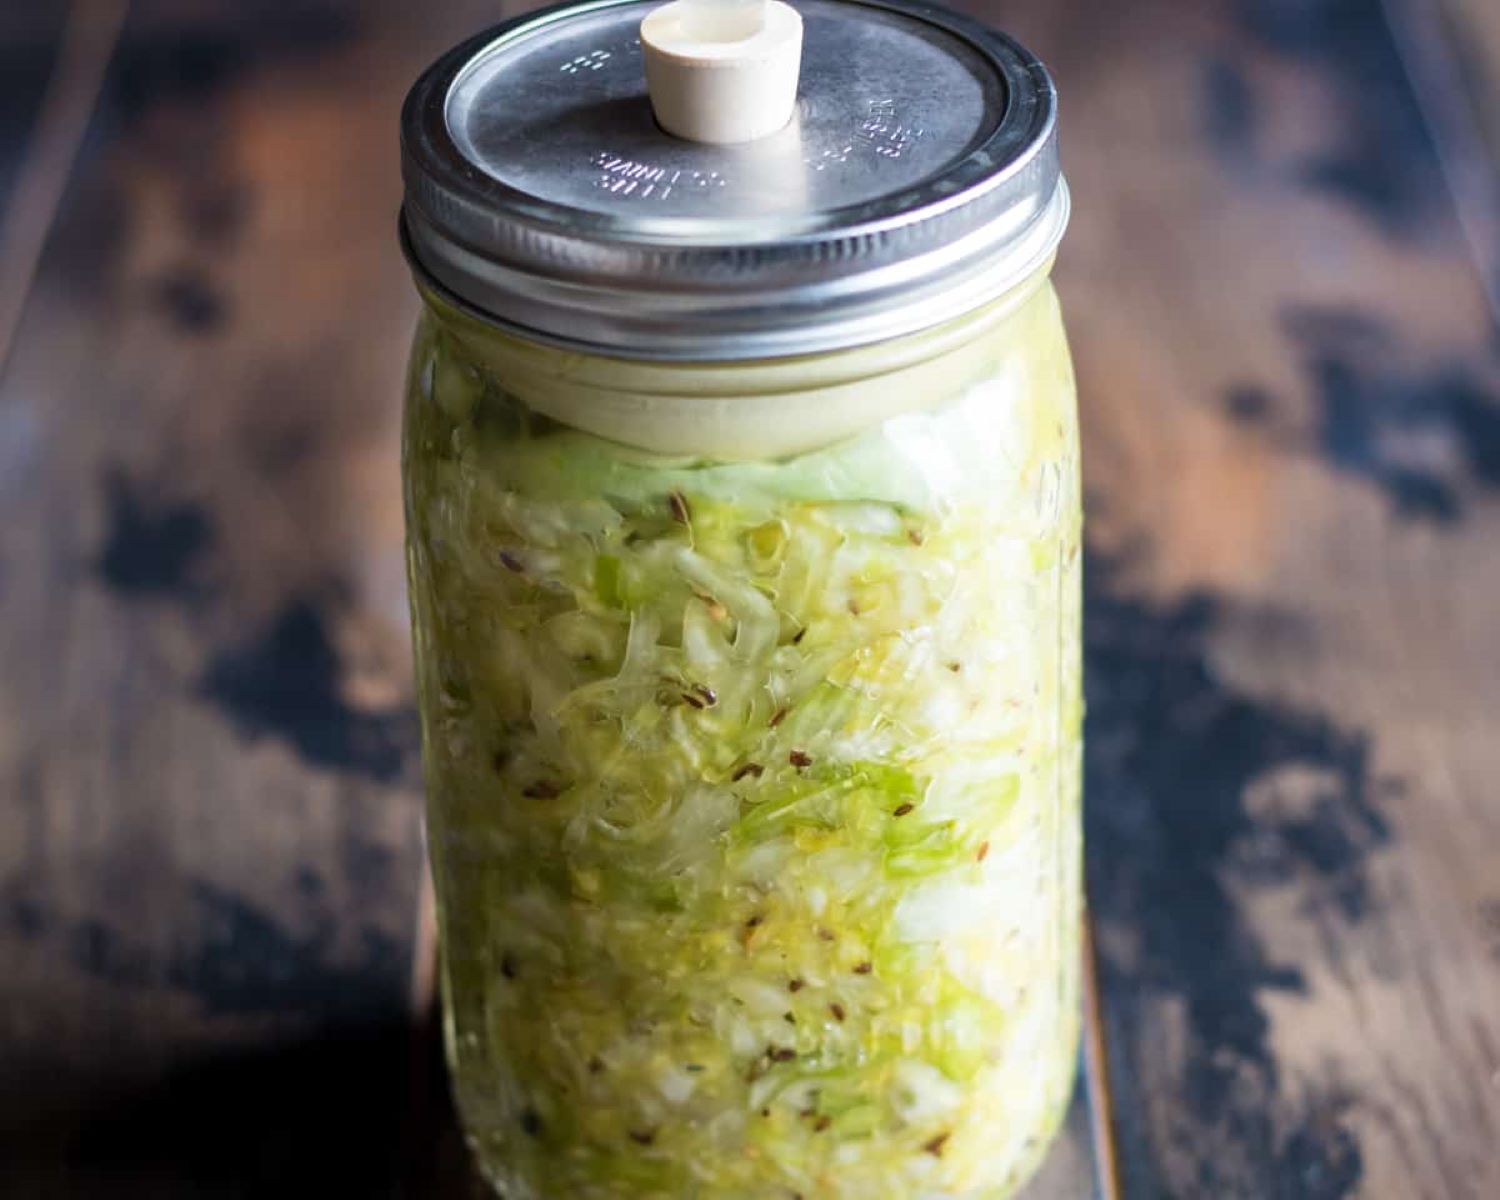 How To Store Sauerkraut After Fermentation